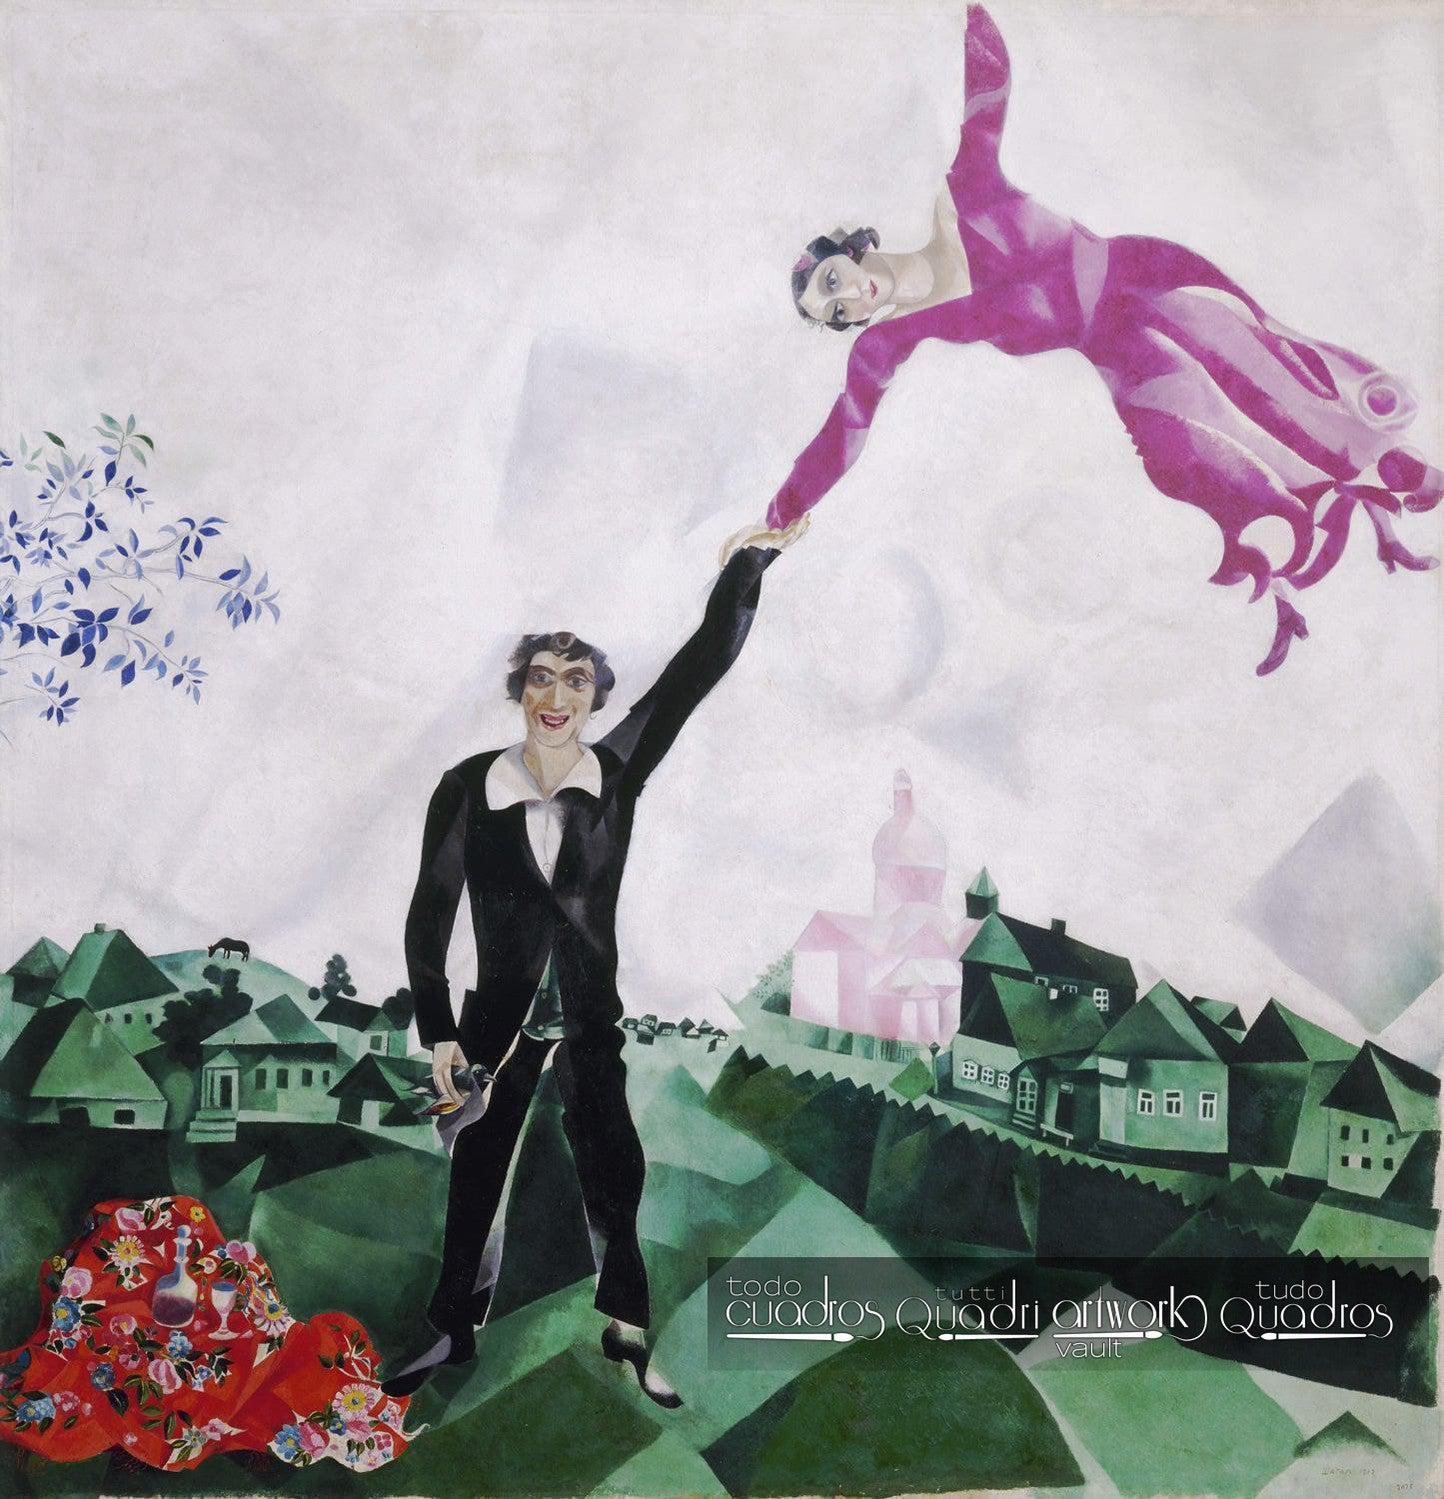 The Promenade, Chagall